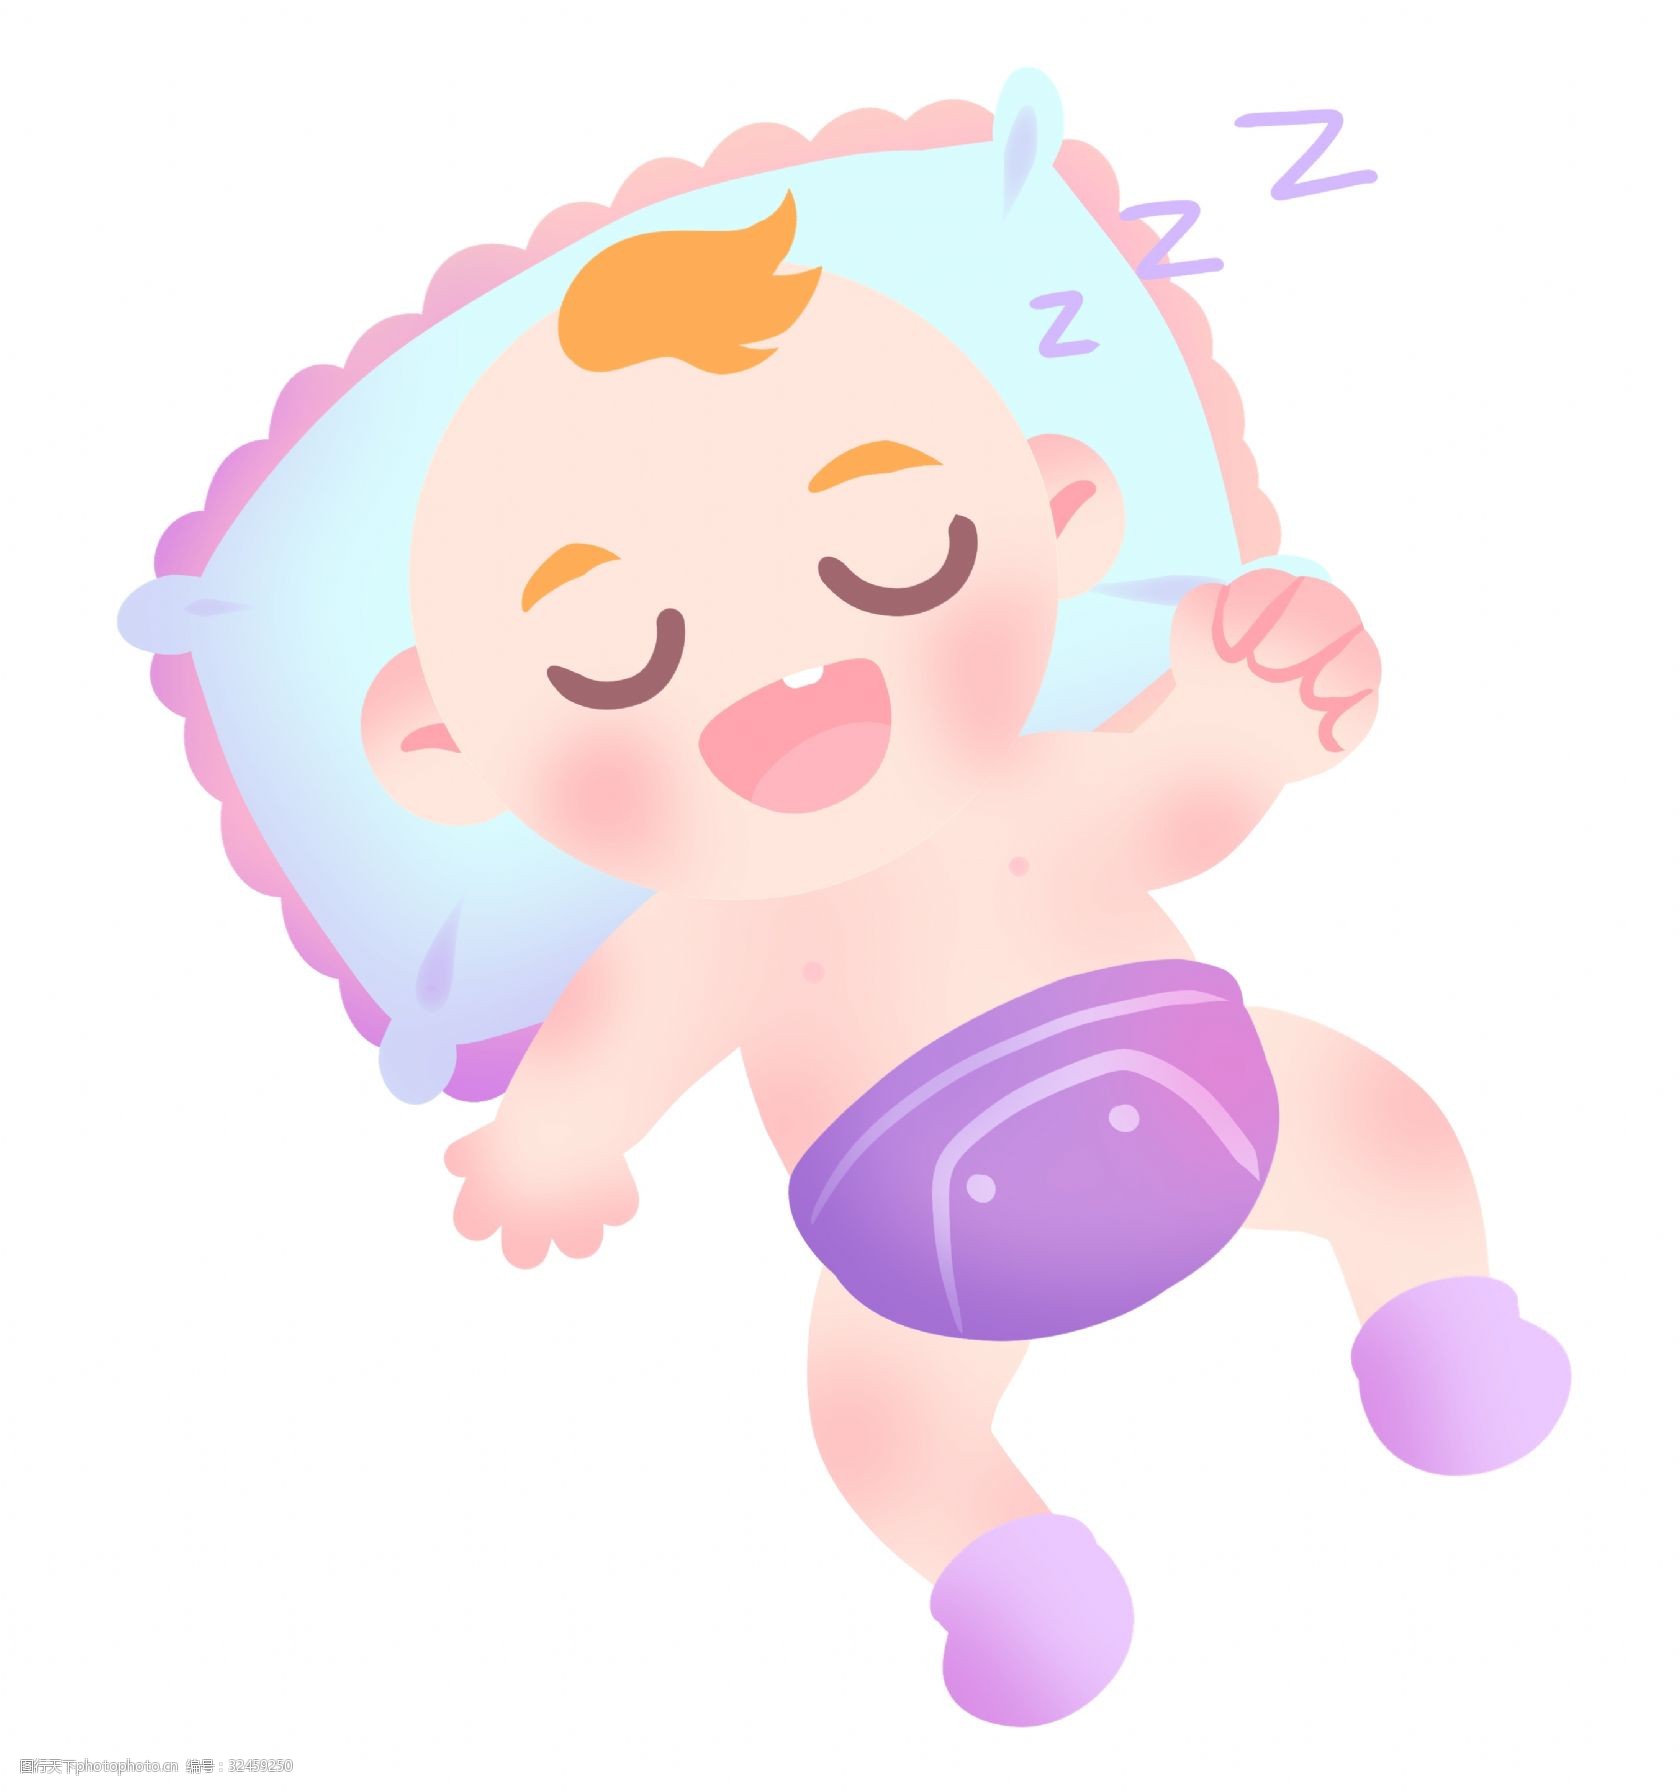 睡觉的婴儿宝贝插画 睡觉的宝贝 卡通插画 宝贝插画 婴儿插画 可爱的